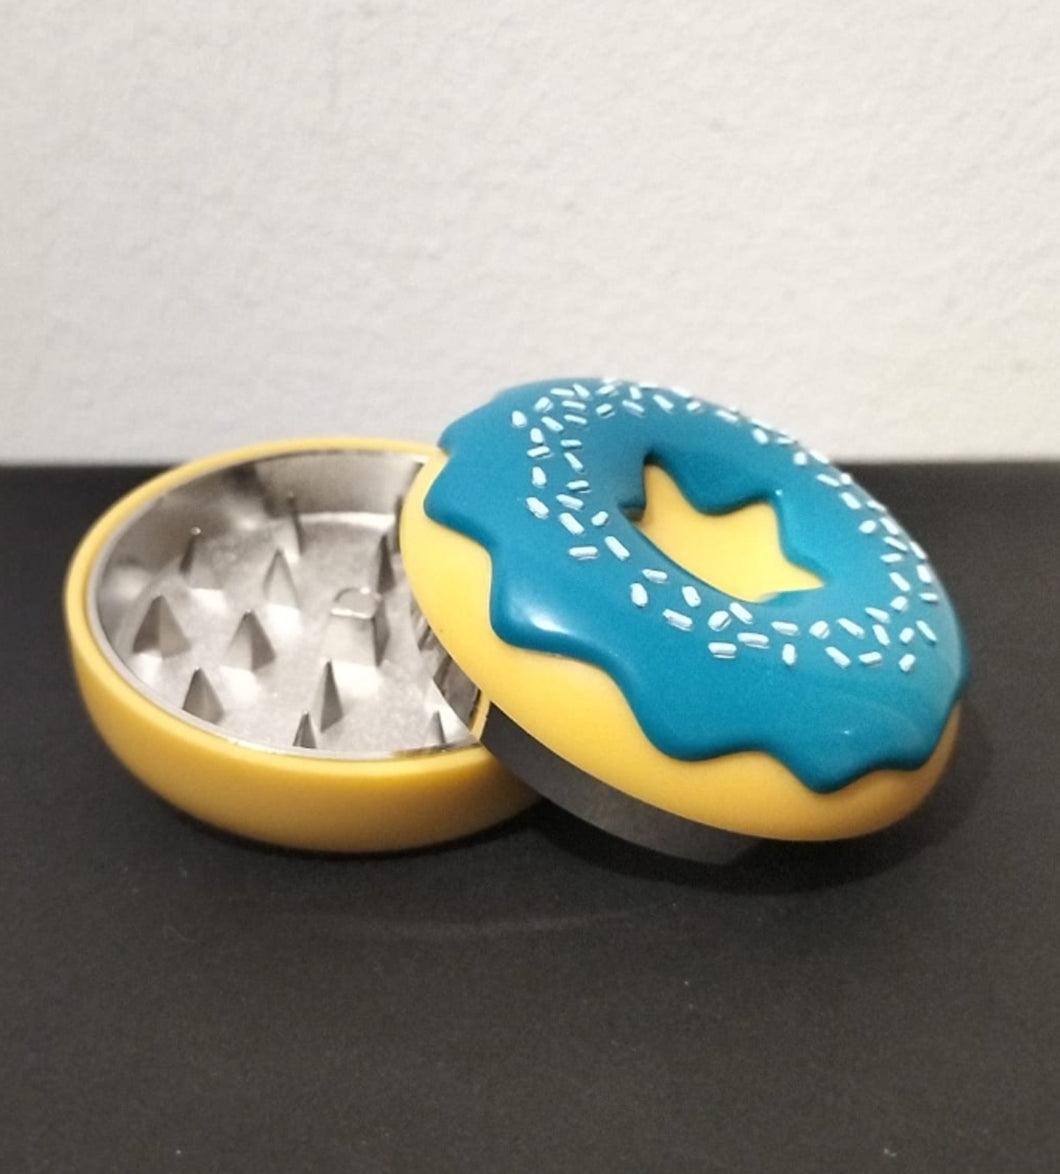 Donut Grinder - 2 parts